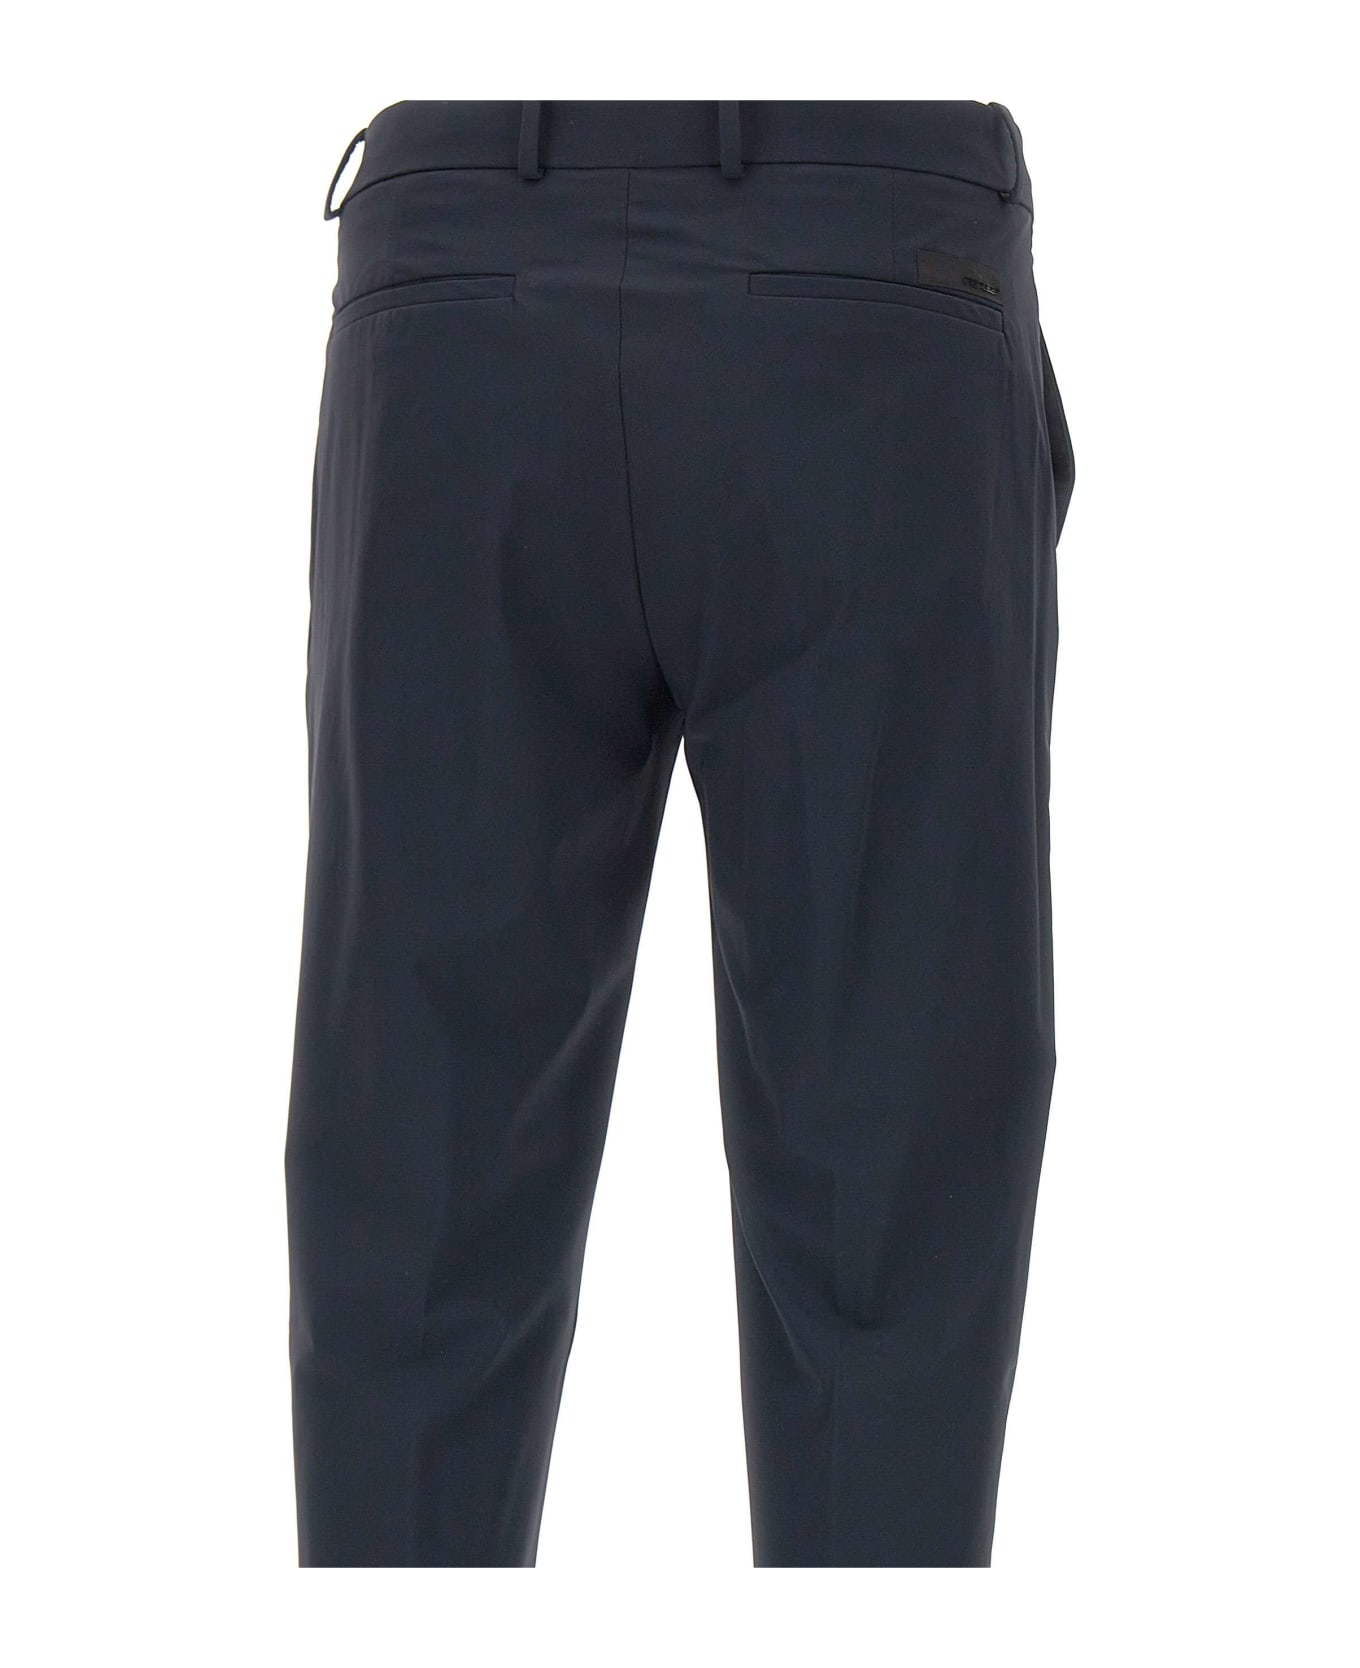 RRD - Roberto Ricci Design Men's Trousers 'revo Chino' - Blue ボトムス